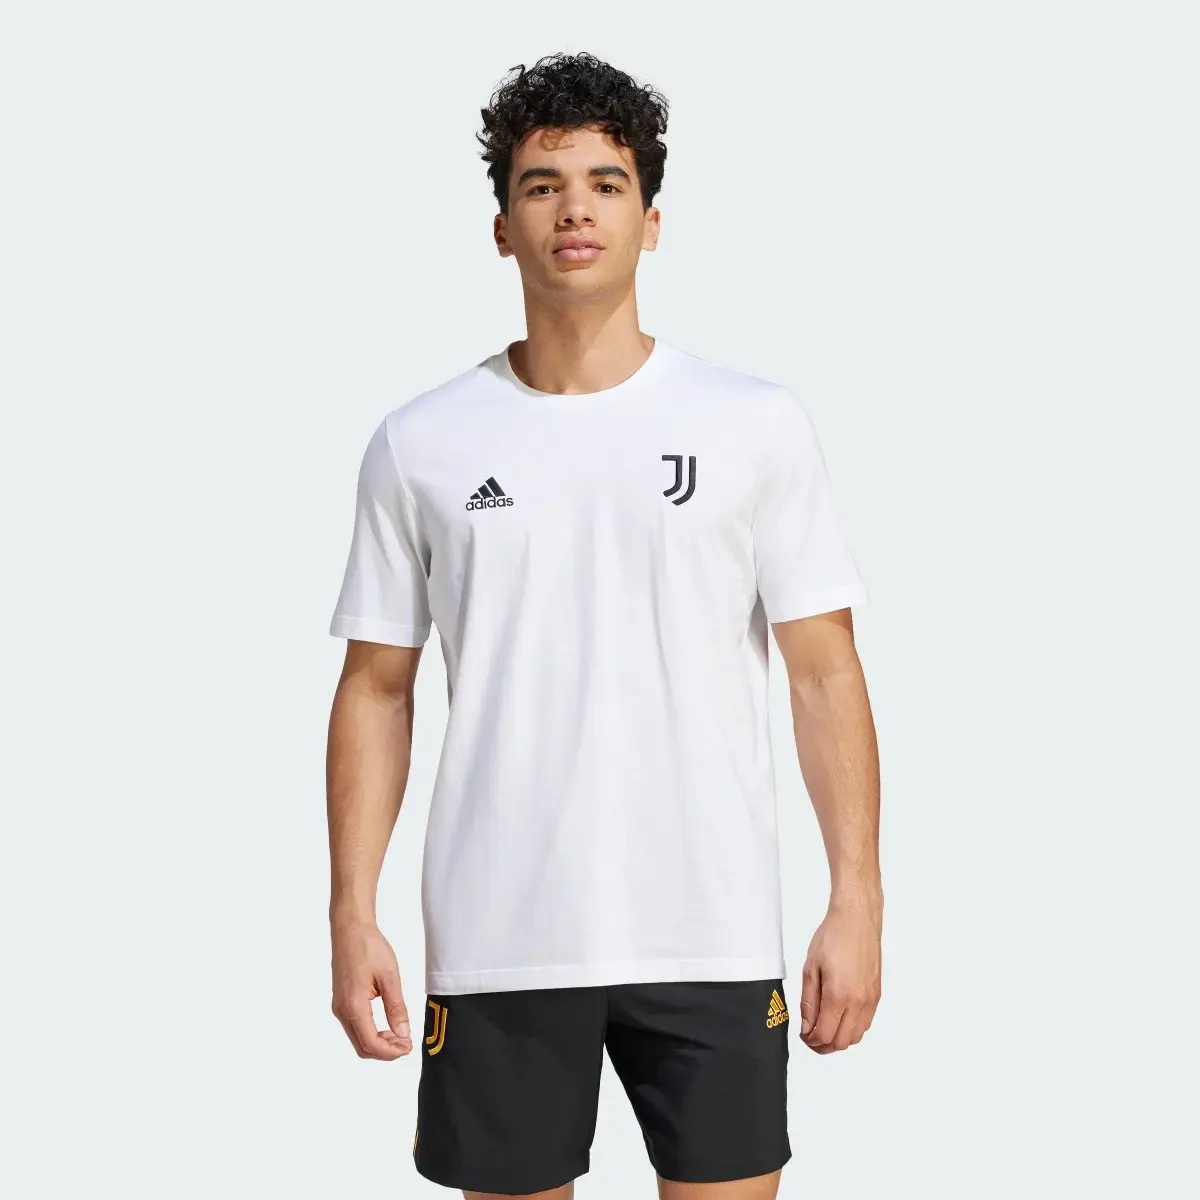 Adidas T-shirt DNA da Juventus. 2